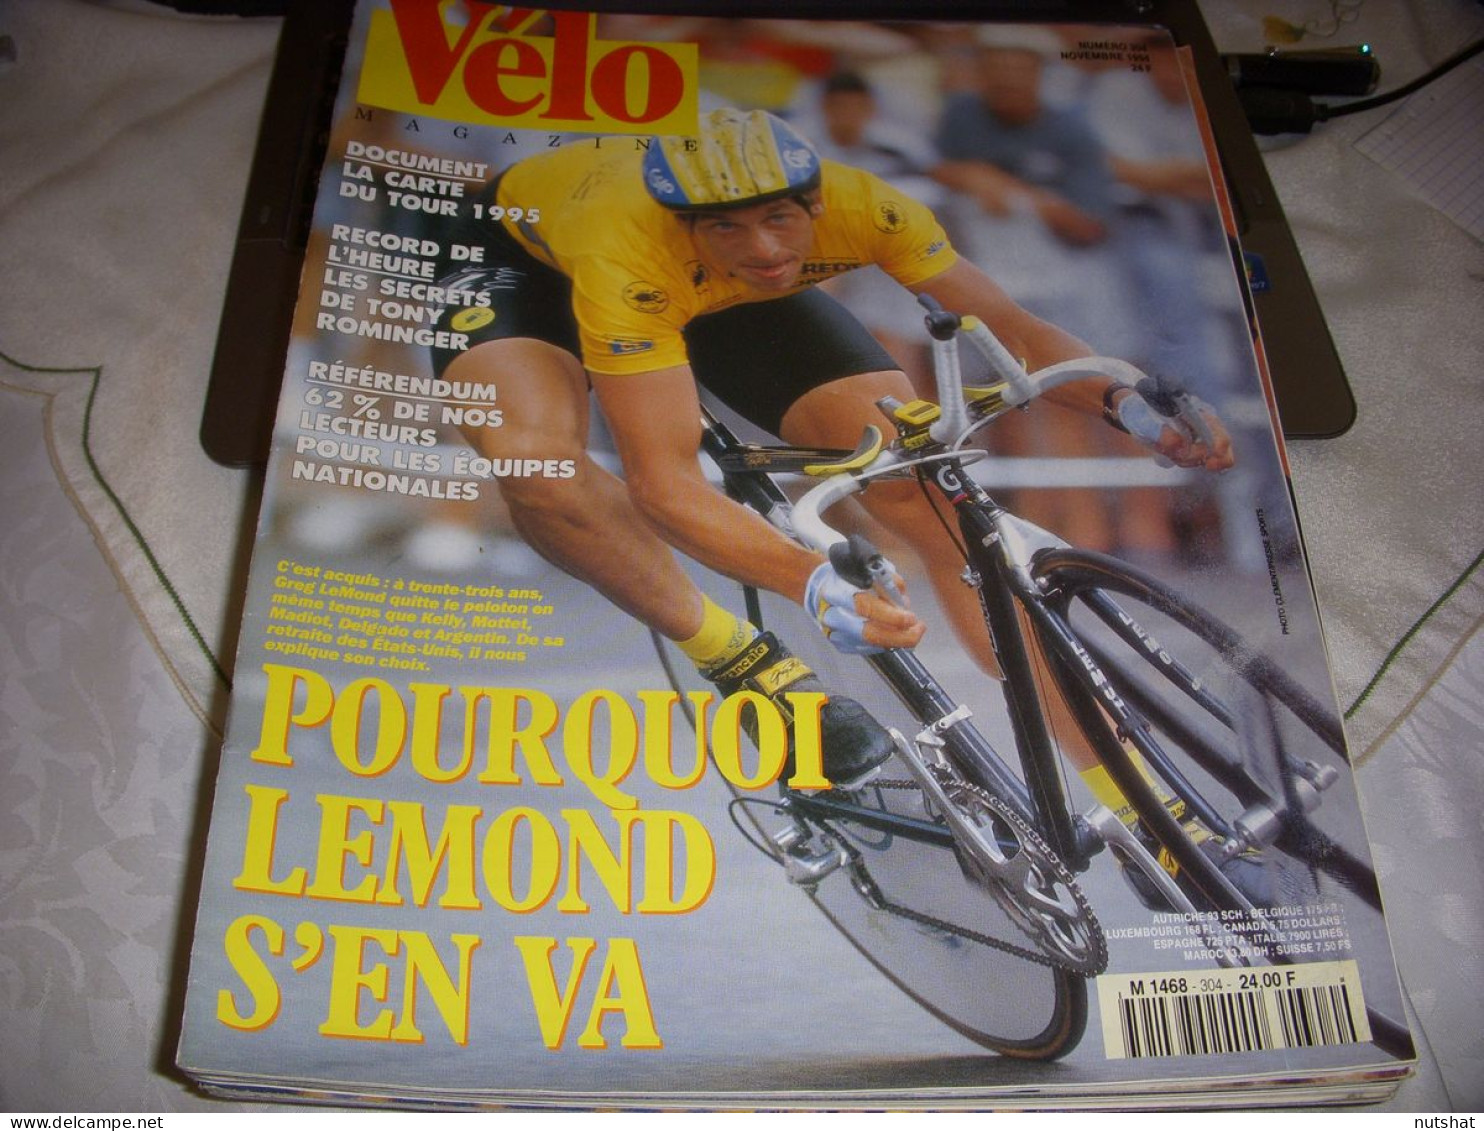 VELO MAG 304 11.1994 FIN CARRIERE LEMOND BORTOLOMI RECORD HEURE ROMINGER - Sport